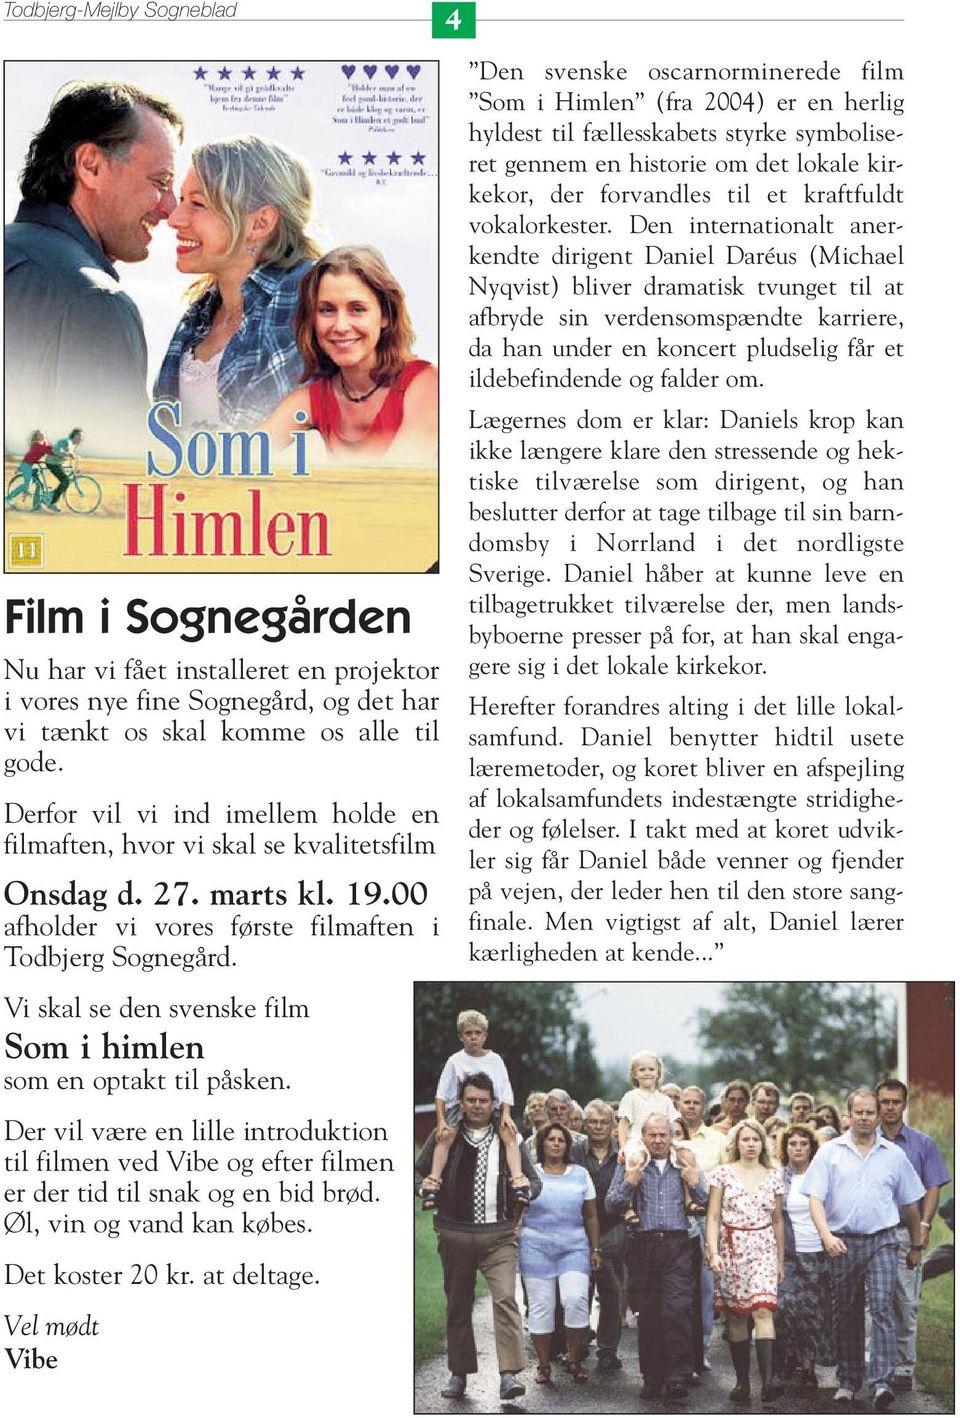 Den svenske oscarnorminerede film Som i Himlen (fra 2004) er en herlig hyldest til fællesskabets styrke symboliseret gennem en historie om det lokale kirkekor, der forvandles til et kraftfuldt